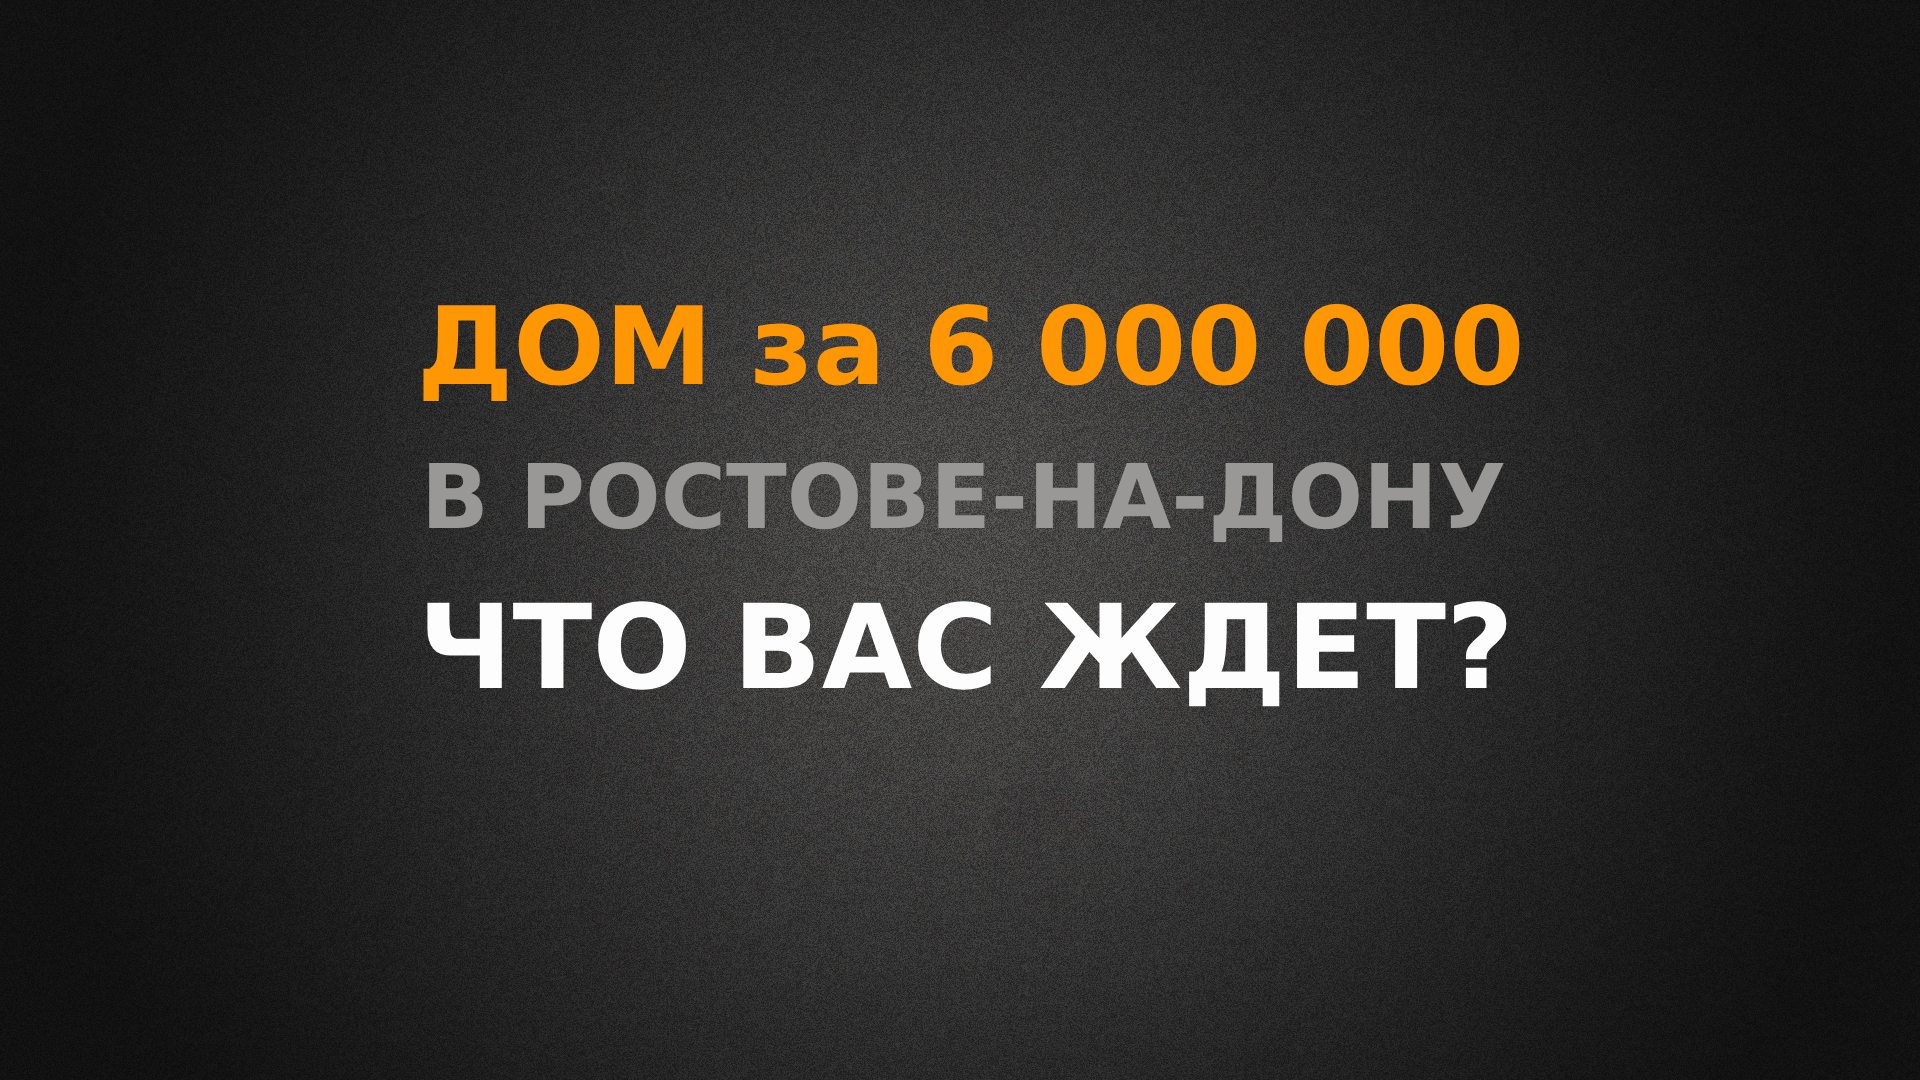 Купить дом за 6 000 000 рублей в Ростове-на-Дону, что Вас ждет?